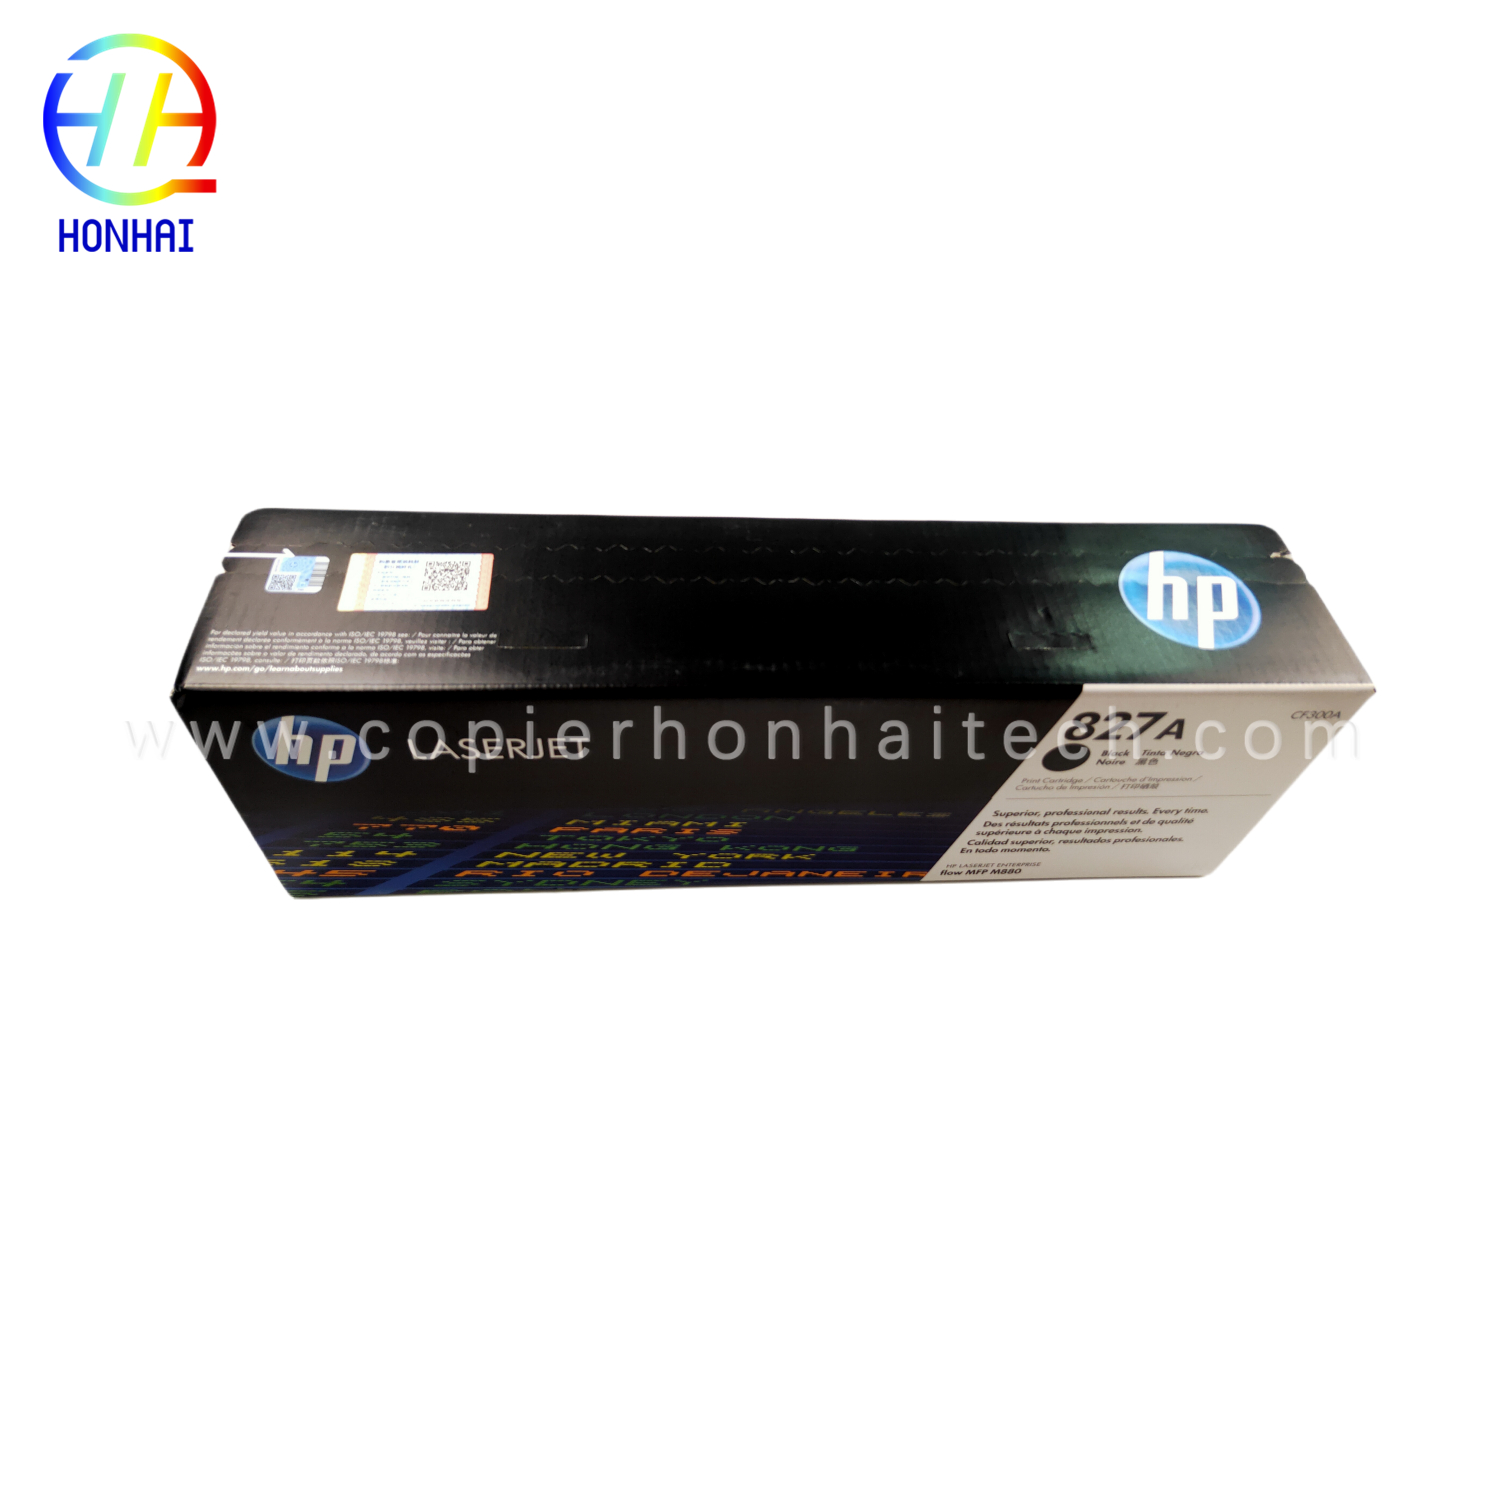 Original new Toner Cartridge for HP MFP M880 827A CF301A